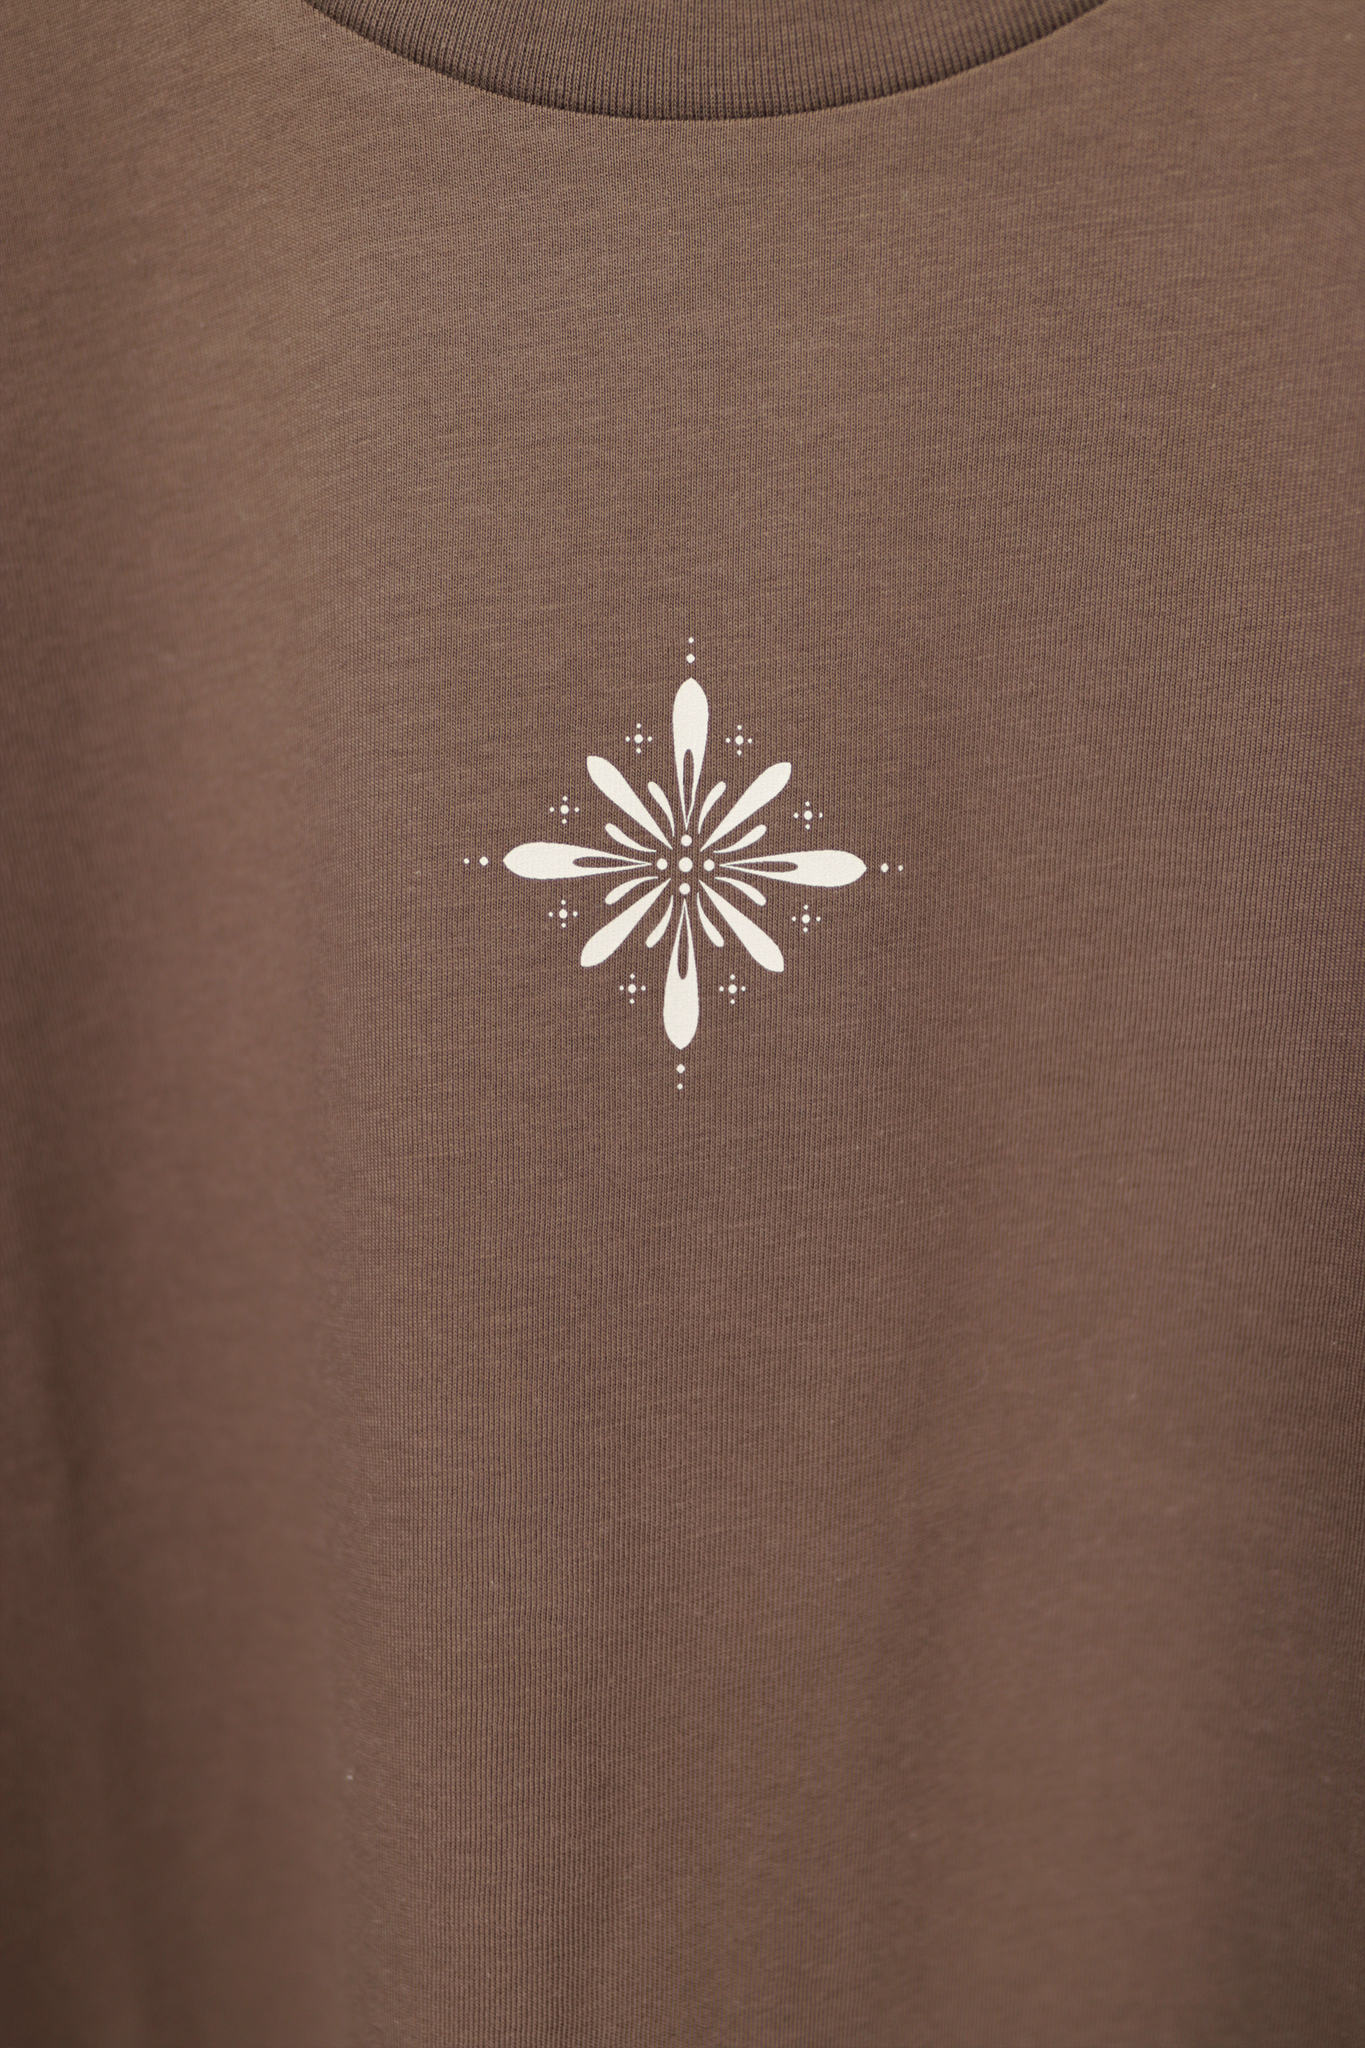 Mandala T-shirt - Brown